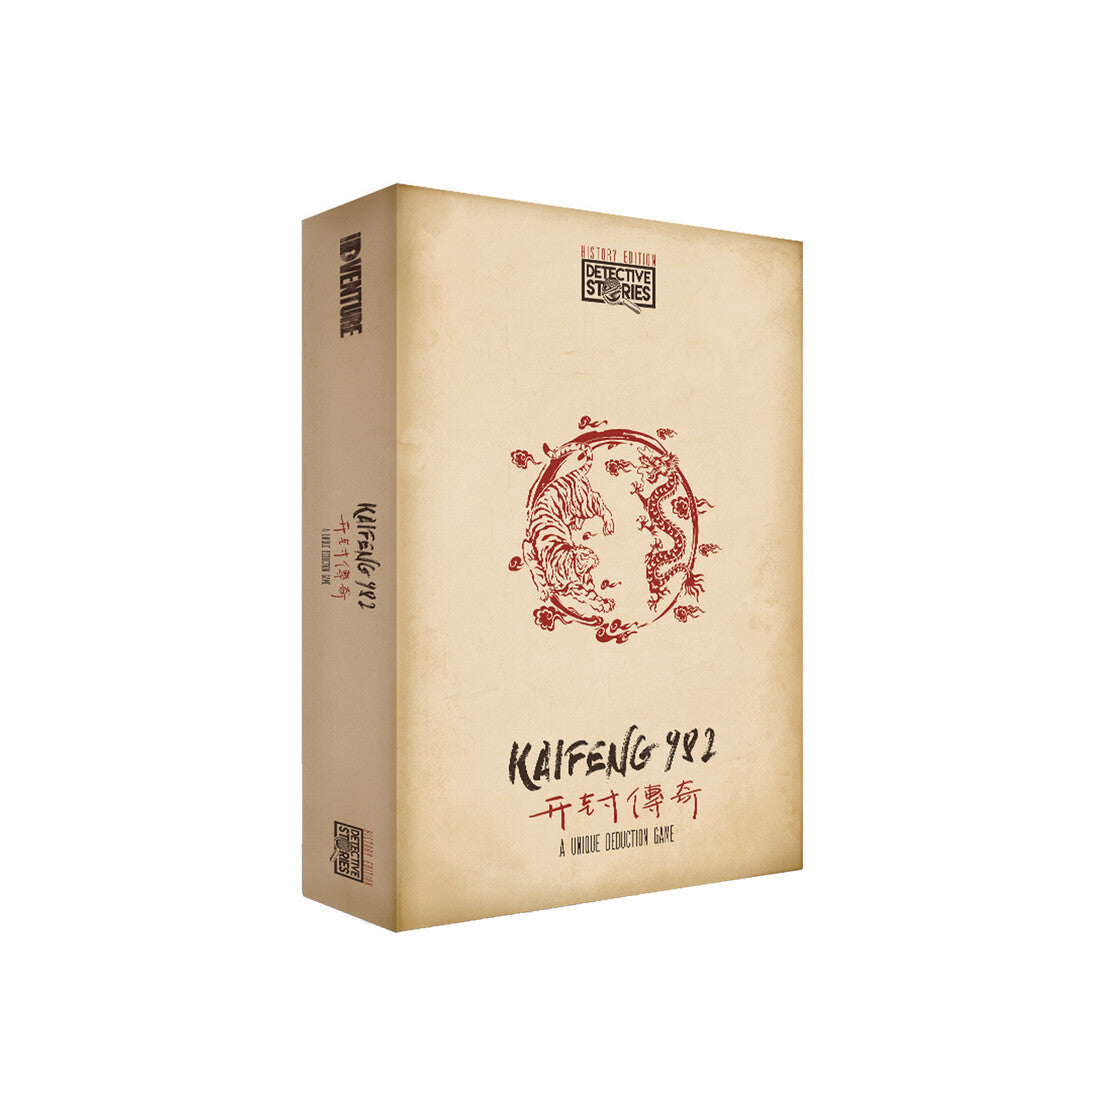 Rental - Kaifeng 982 by IDventure